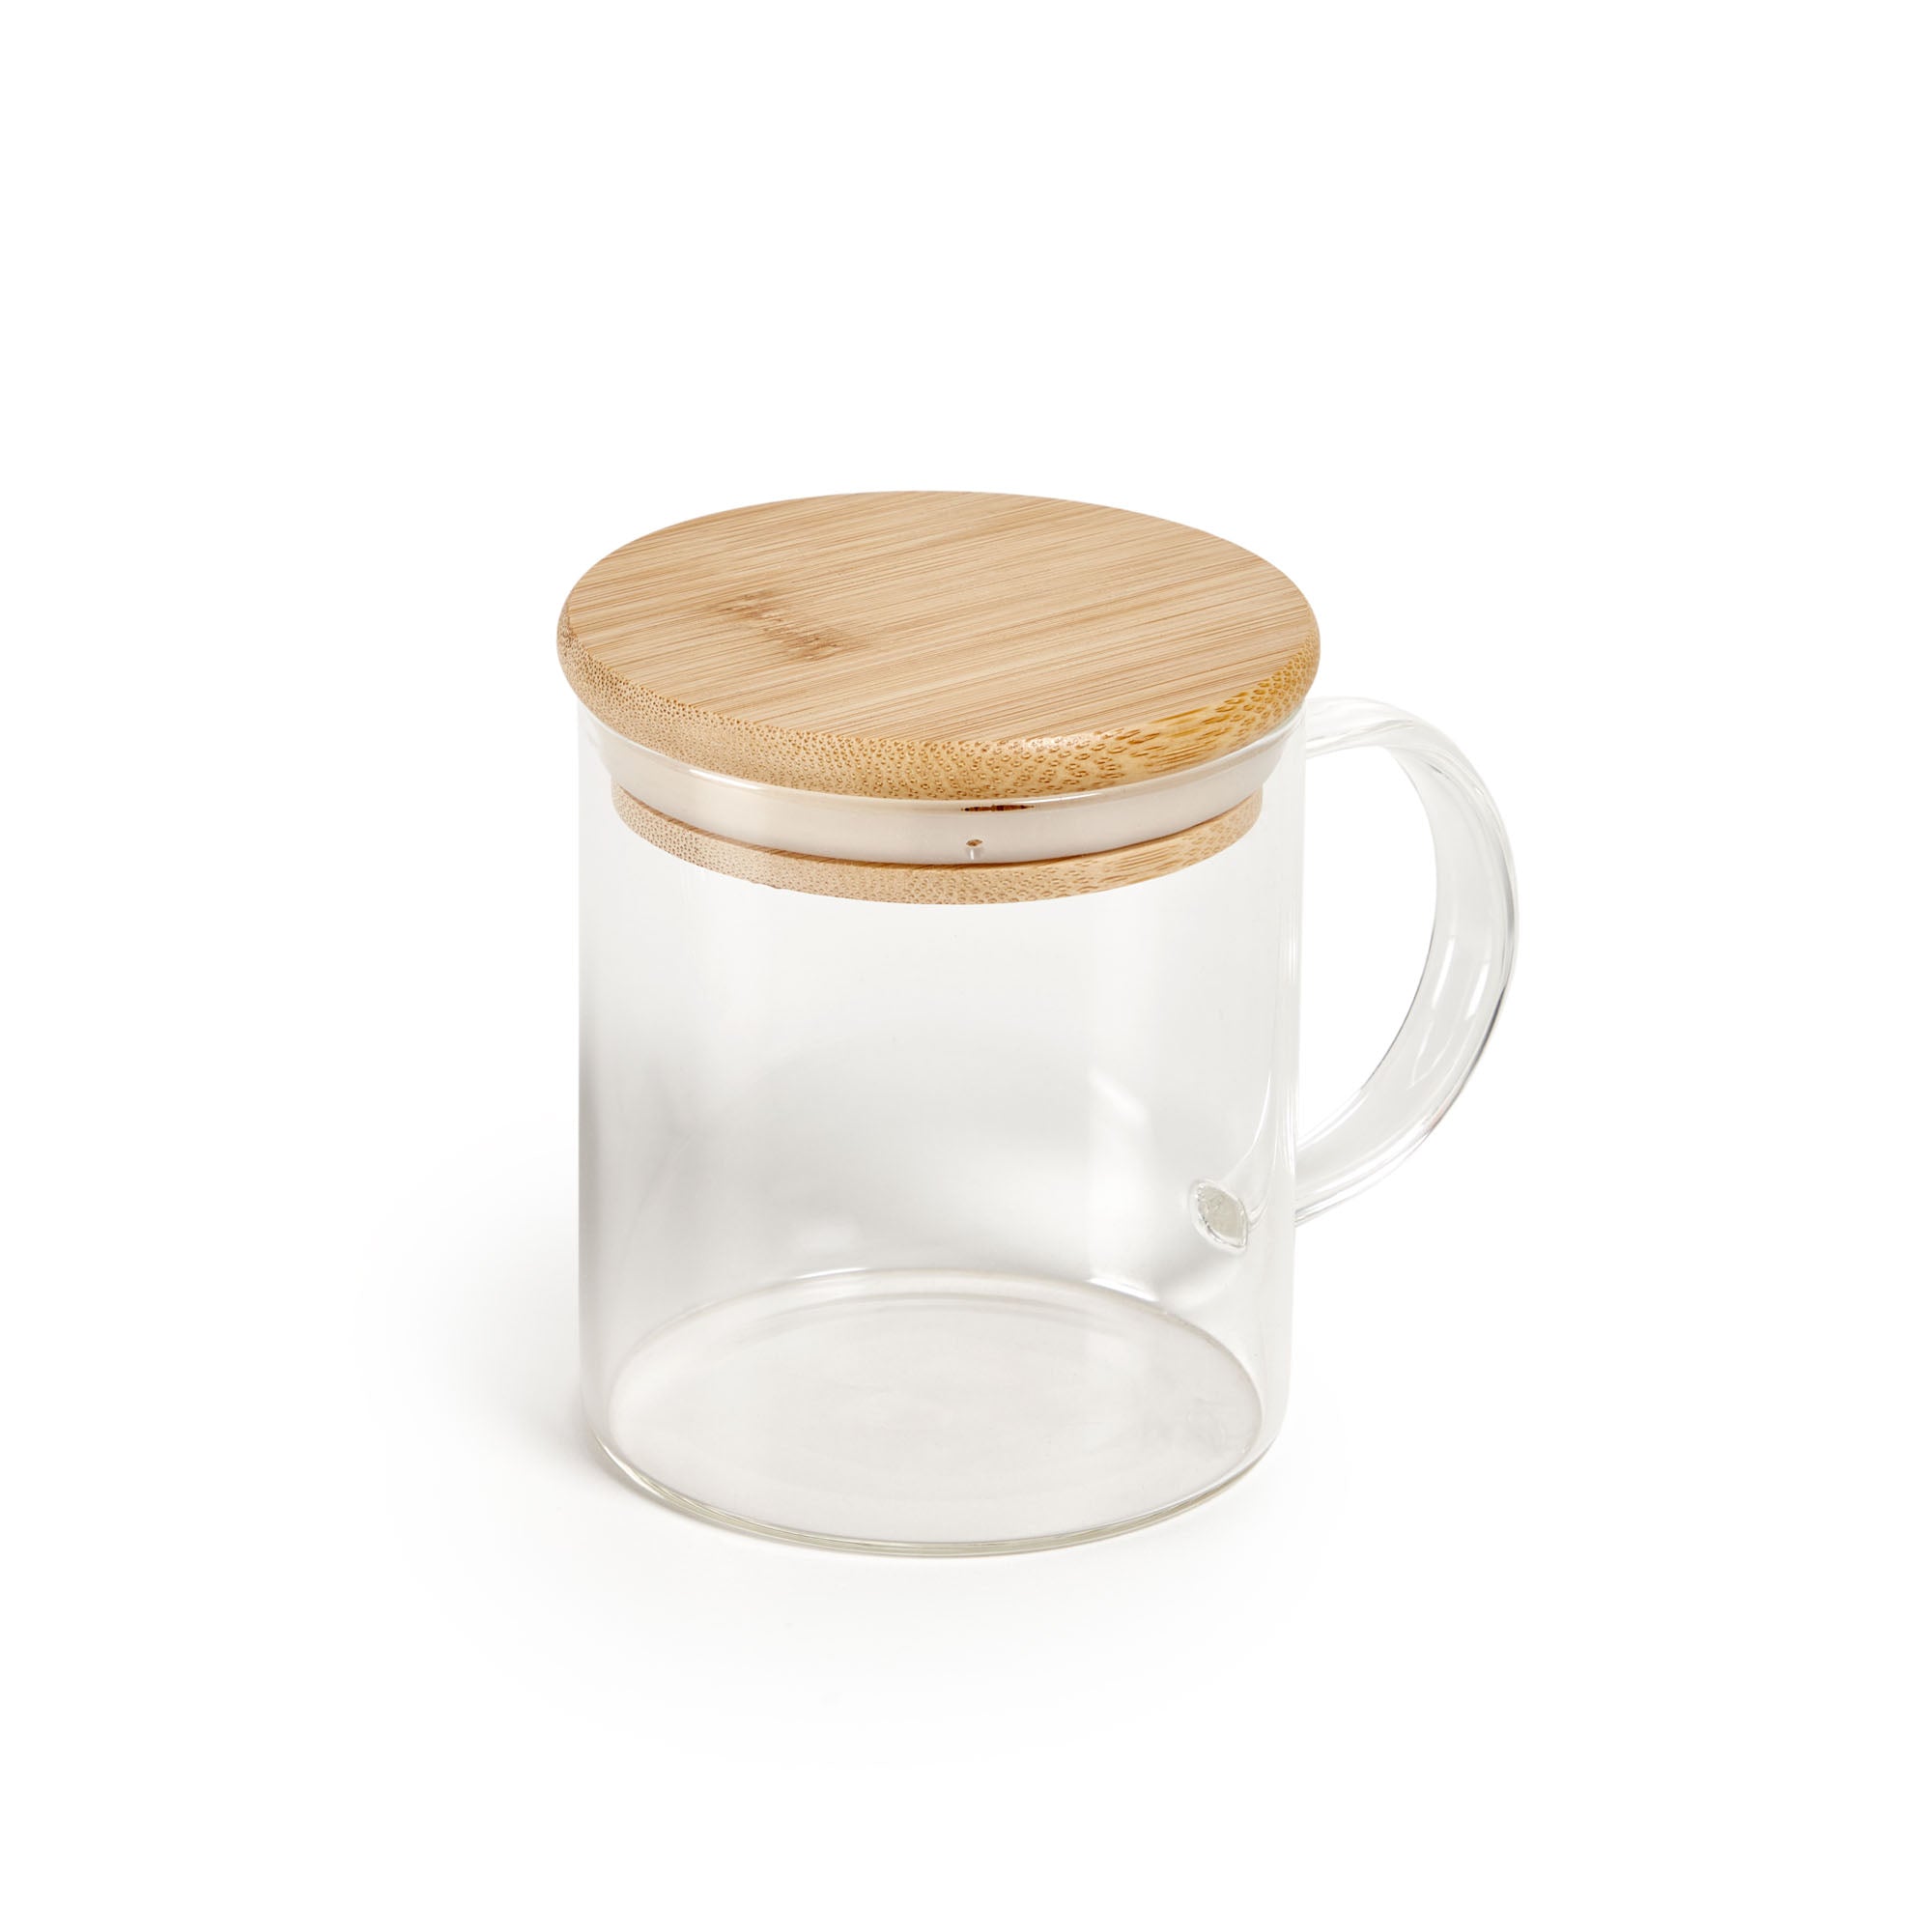 Eumelia transparent glass mug with bamboo lid